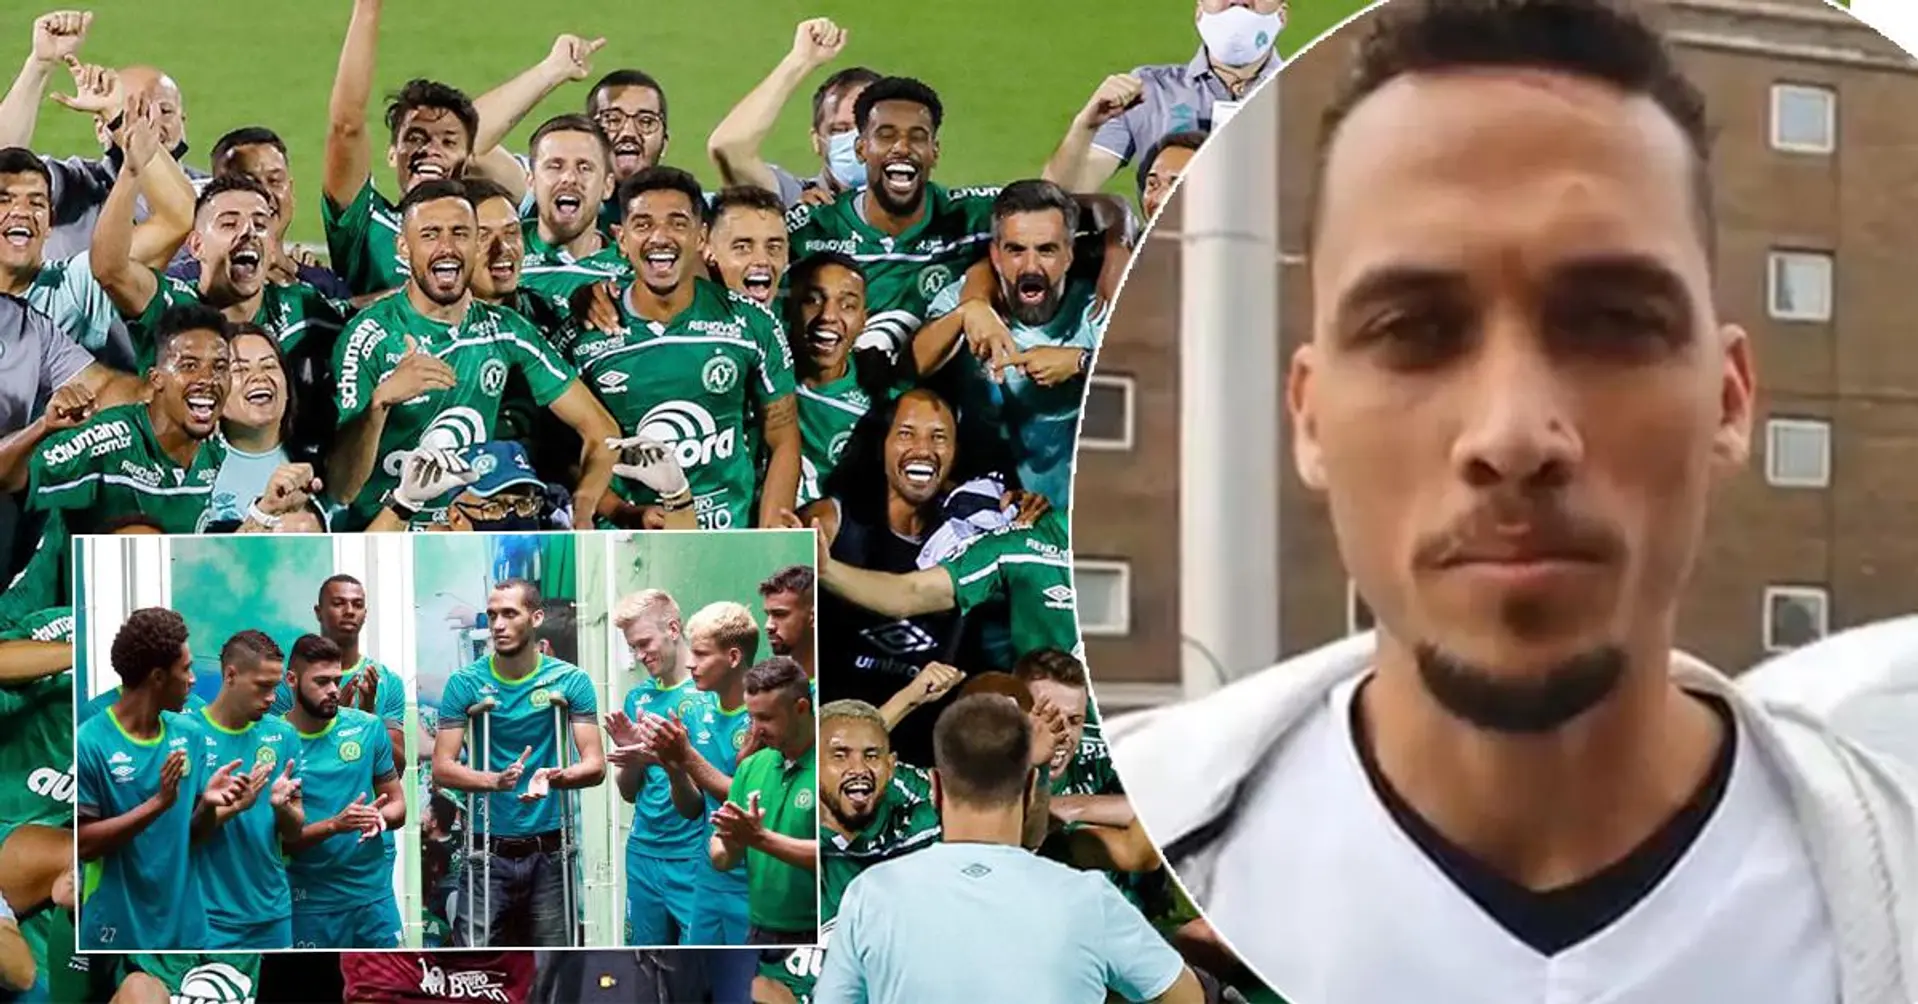 Chapecoense steigt 5 Jahre nach dem Flugzeugabsturz in die 1. Liga Brasiliens auf, ihr Sportdirektor hat ihn überlebt